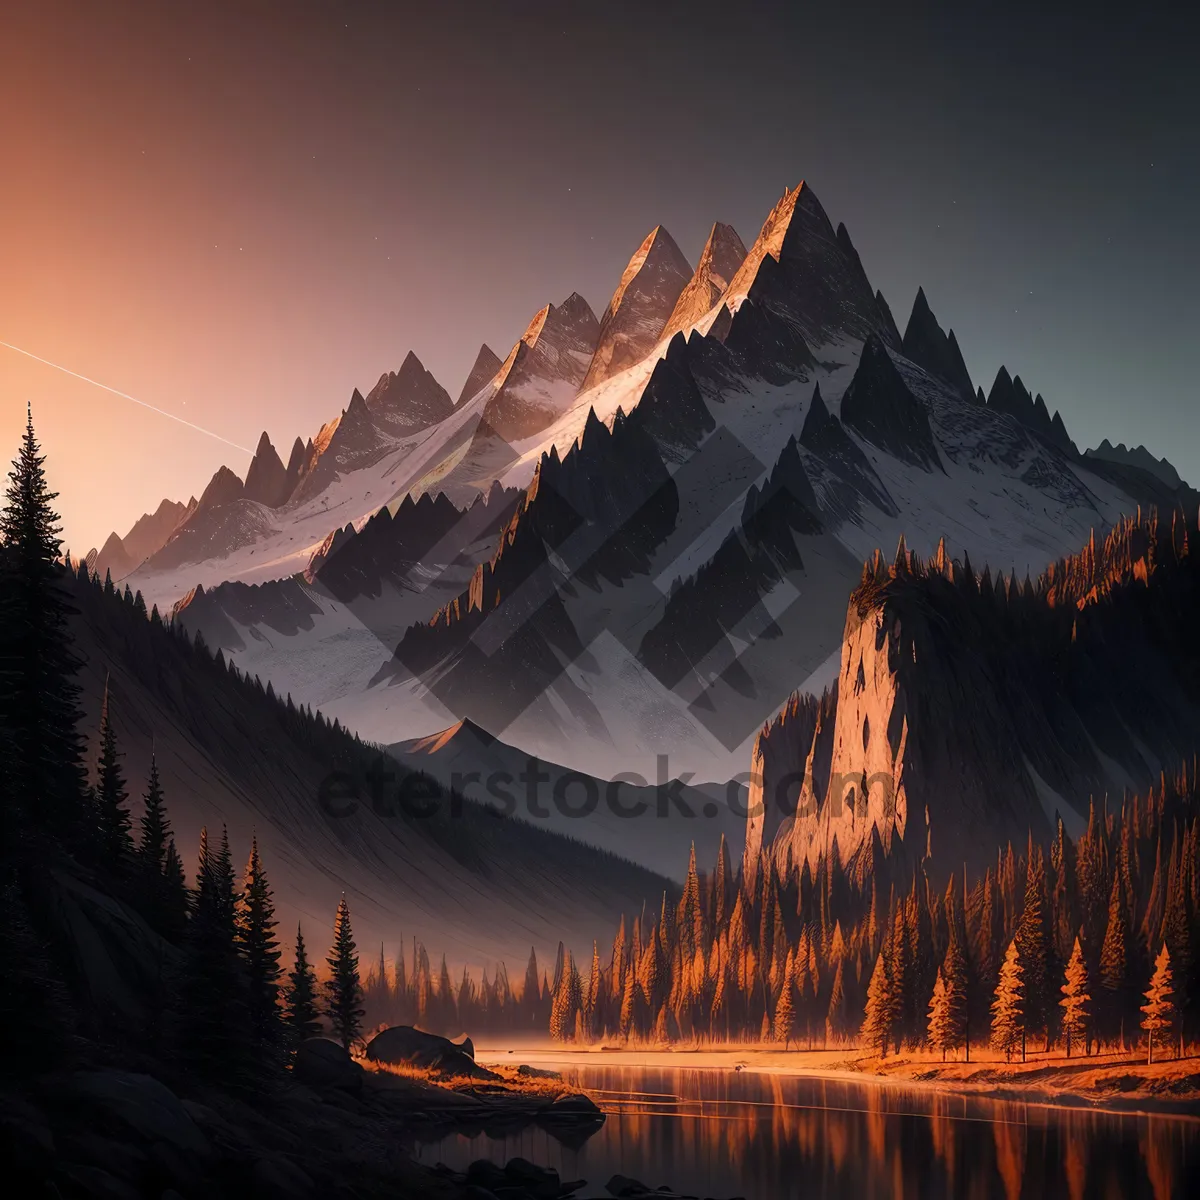 Picture of Majestic snowy peaks in a breathtaking landscape